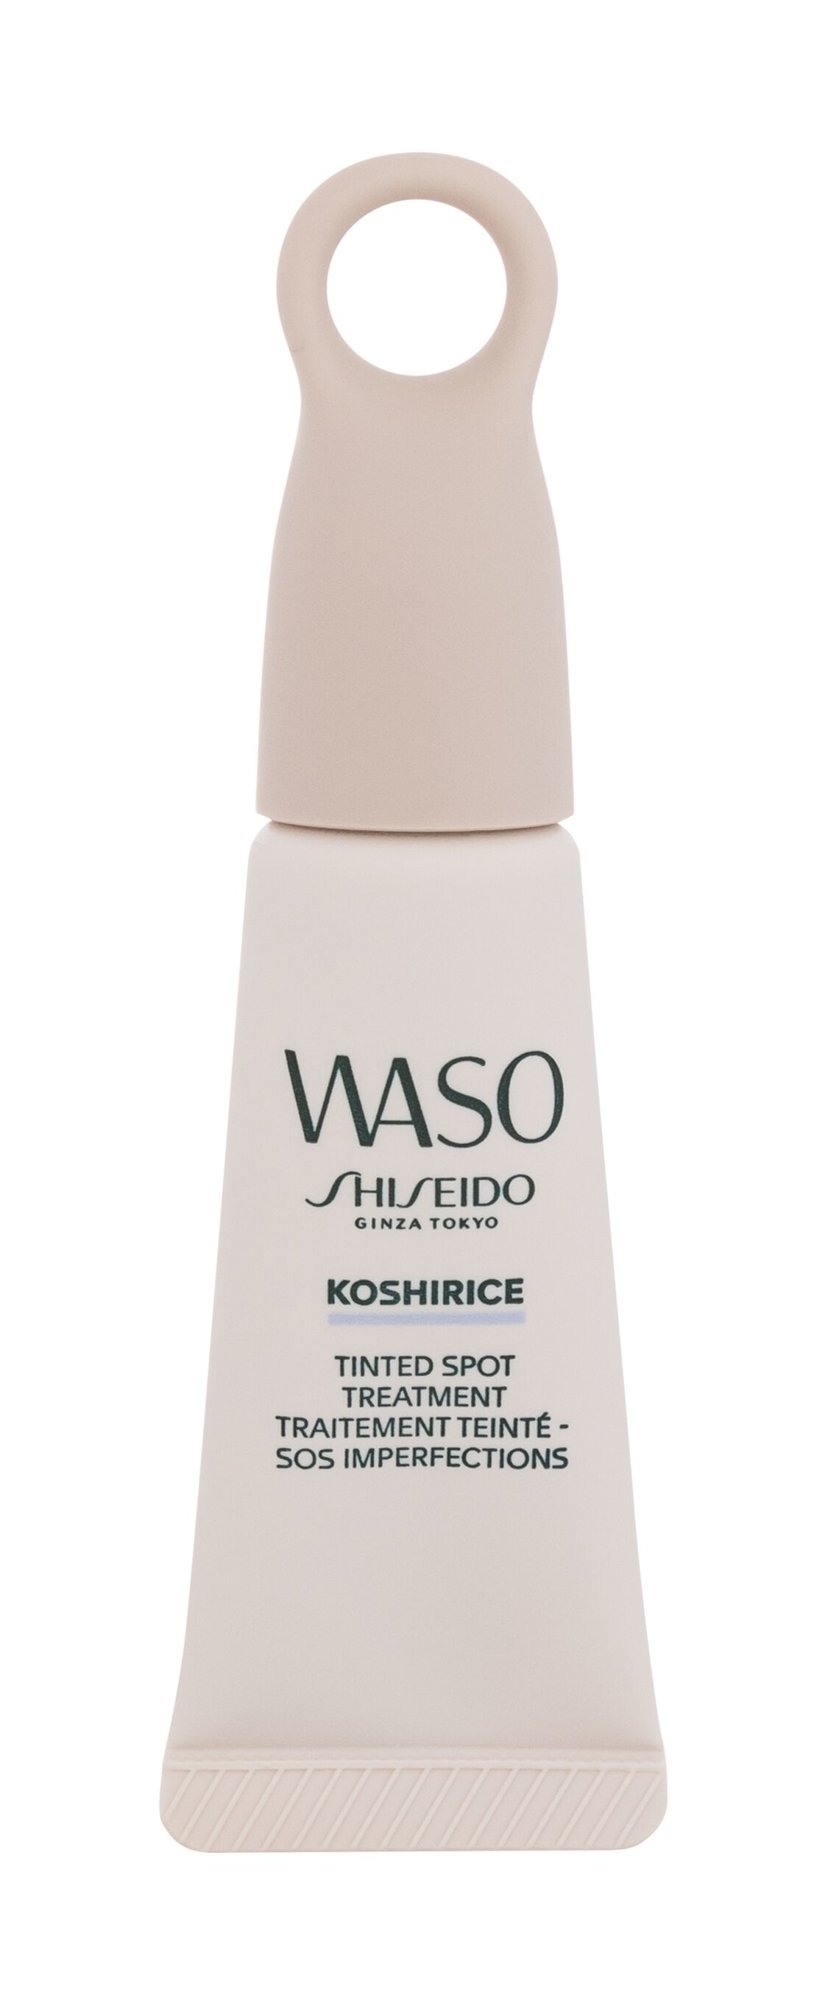 Shiseido Waso Koshirice Tinted Spot vietinės priežiūros priemonė